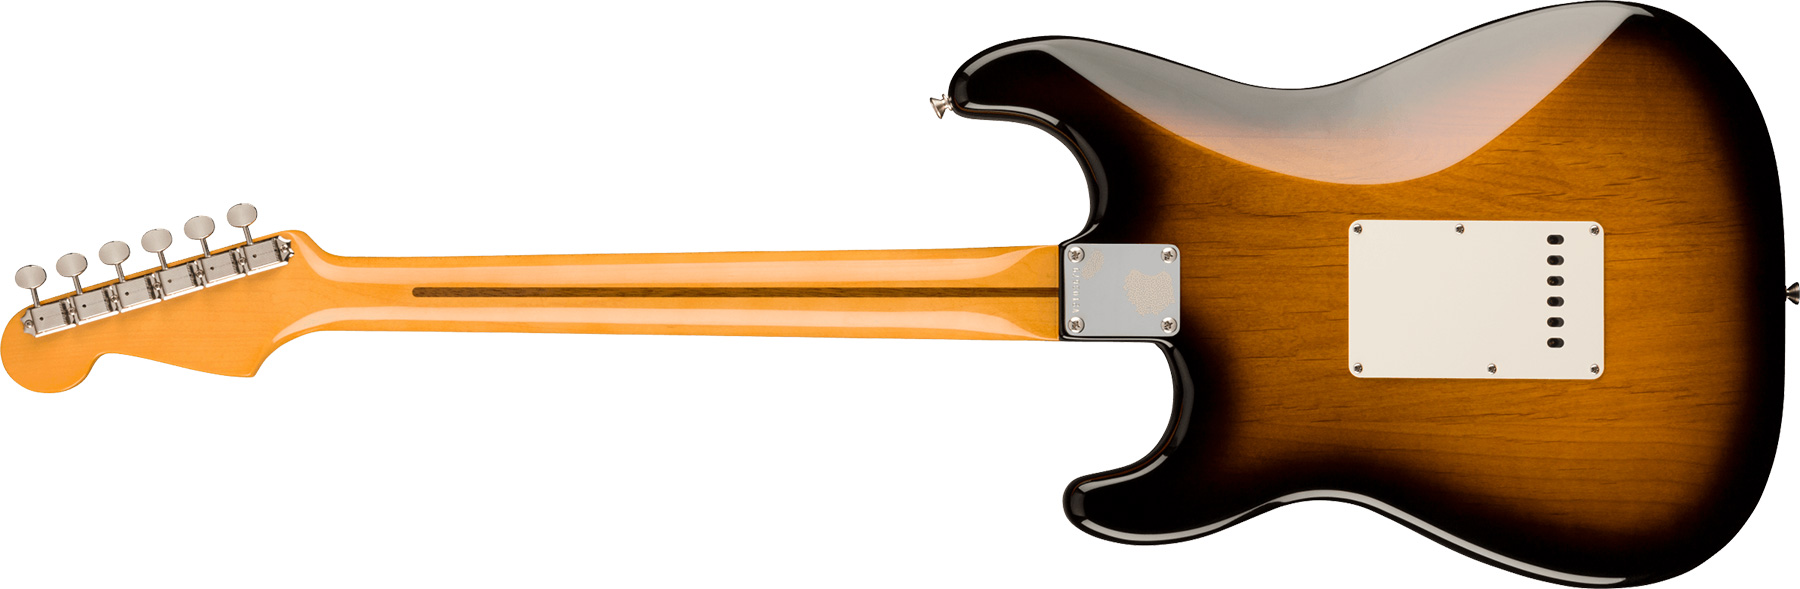 Fender Strat 1957 American Vintage Ii Usa 3s Trem Mn - 2-color Sunburst - Guitare Électrique Forme Str - Variation 1